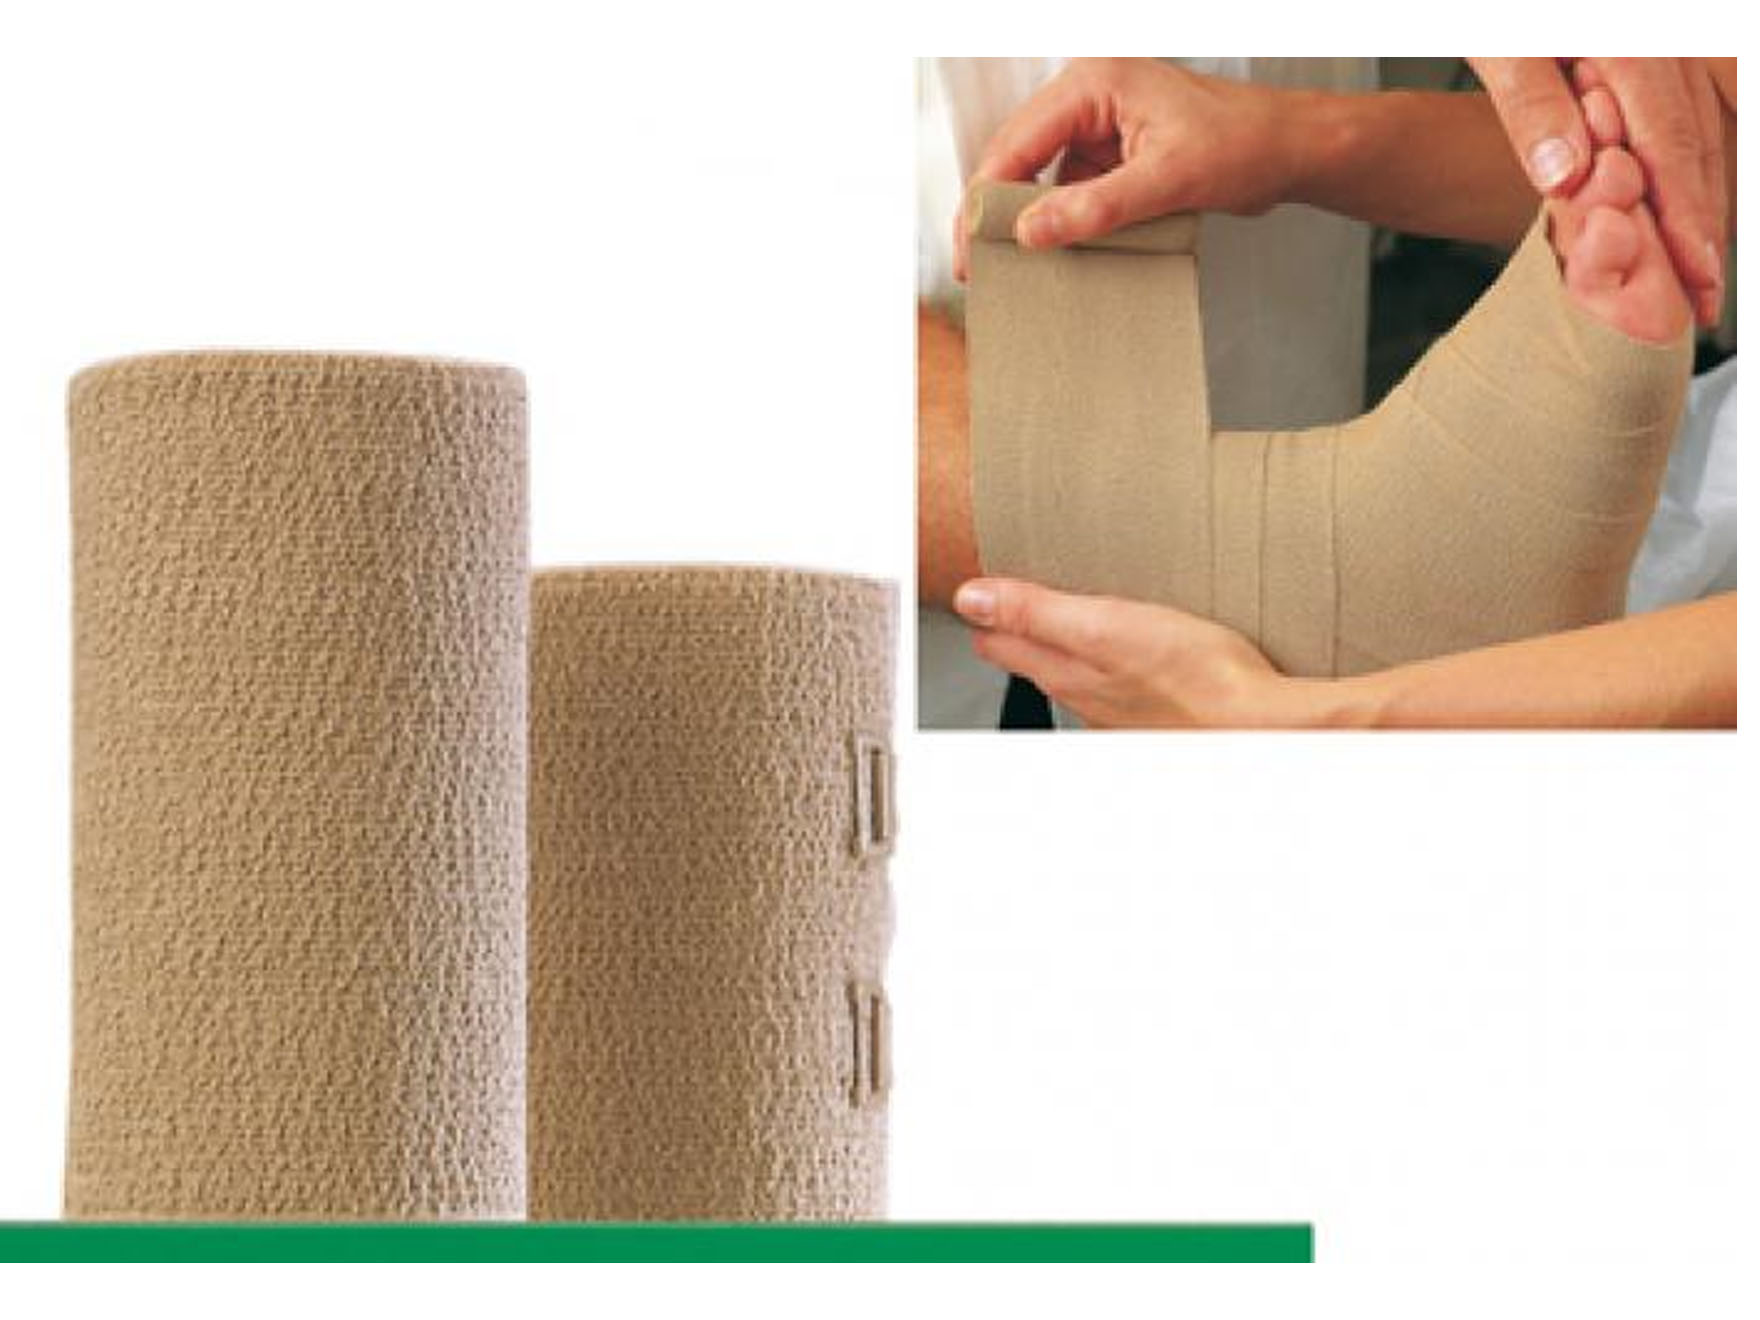 Dauerbinde® K - bande à allongement long - surface texturée - 10 cm x 14 m - 1 pc